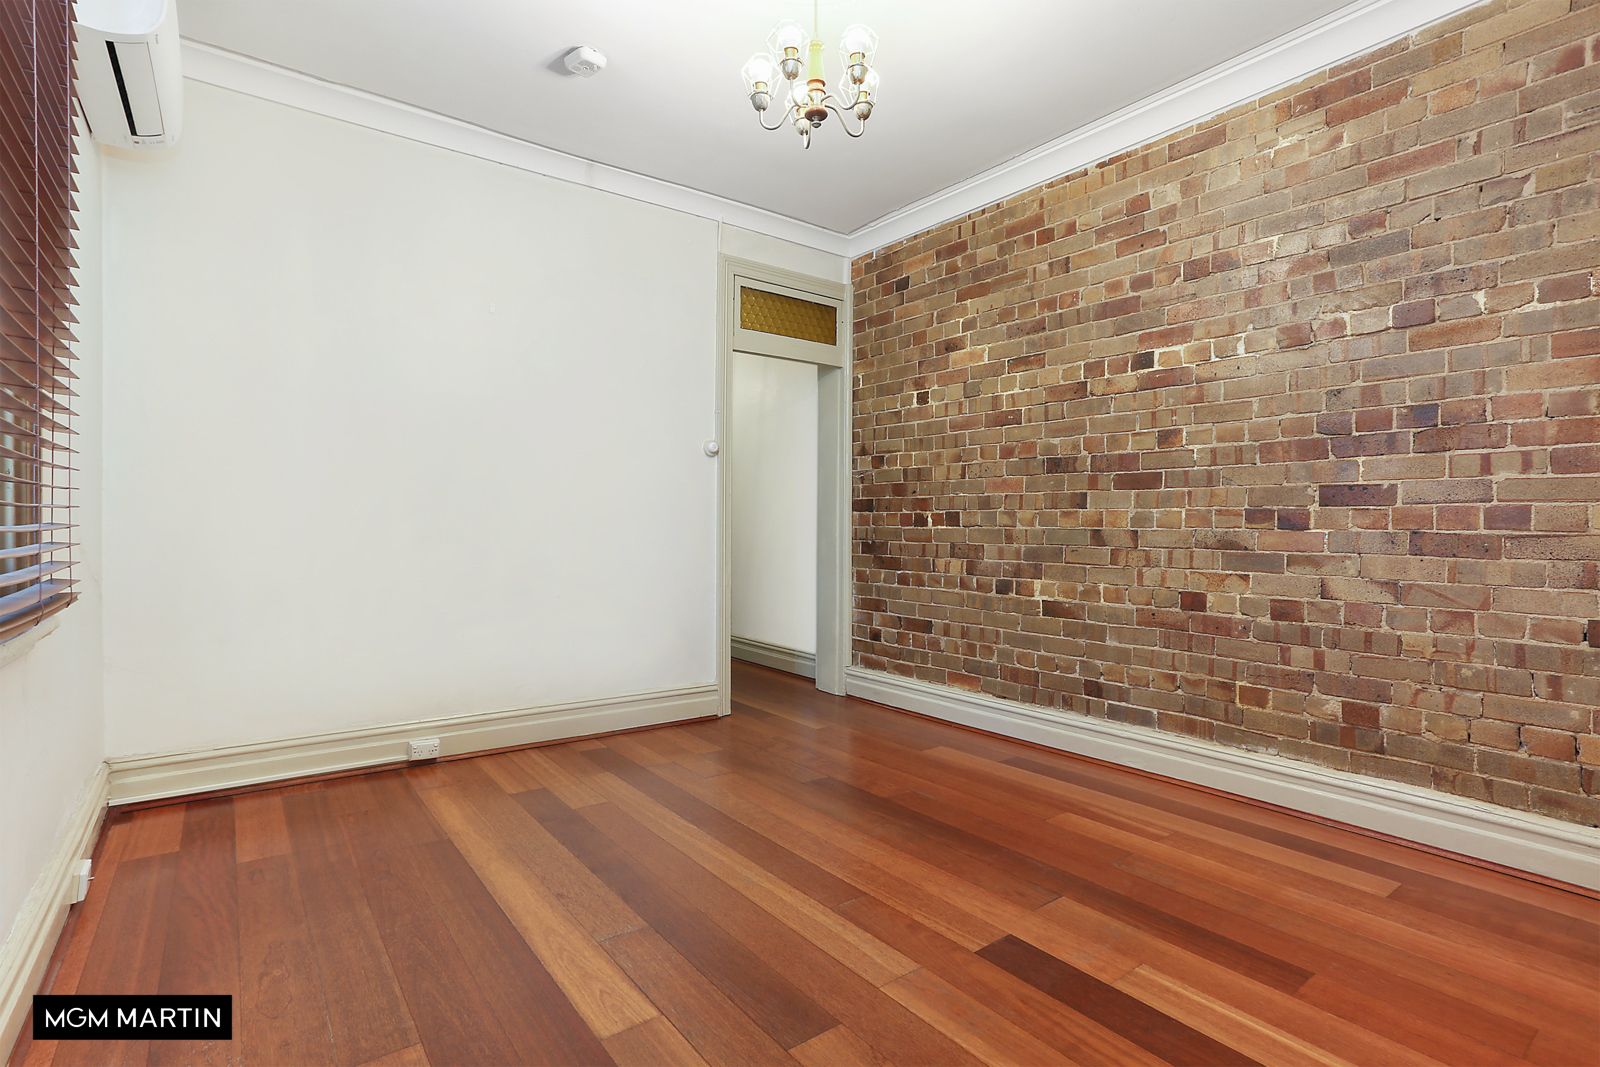 2 bedrooms House in 35 Portman Street ZETLAND NSW, 2017